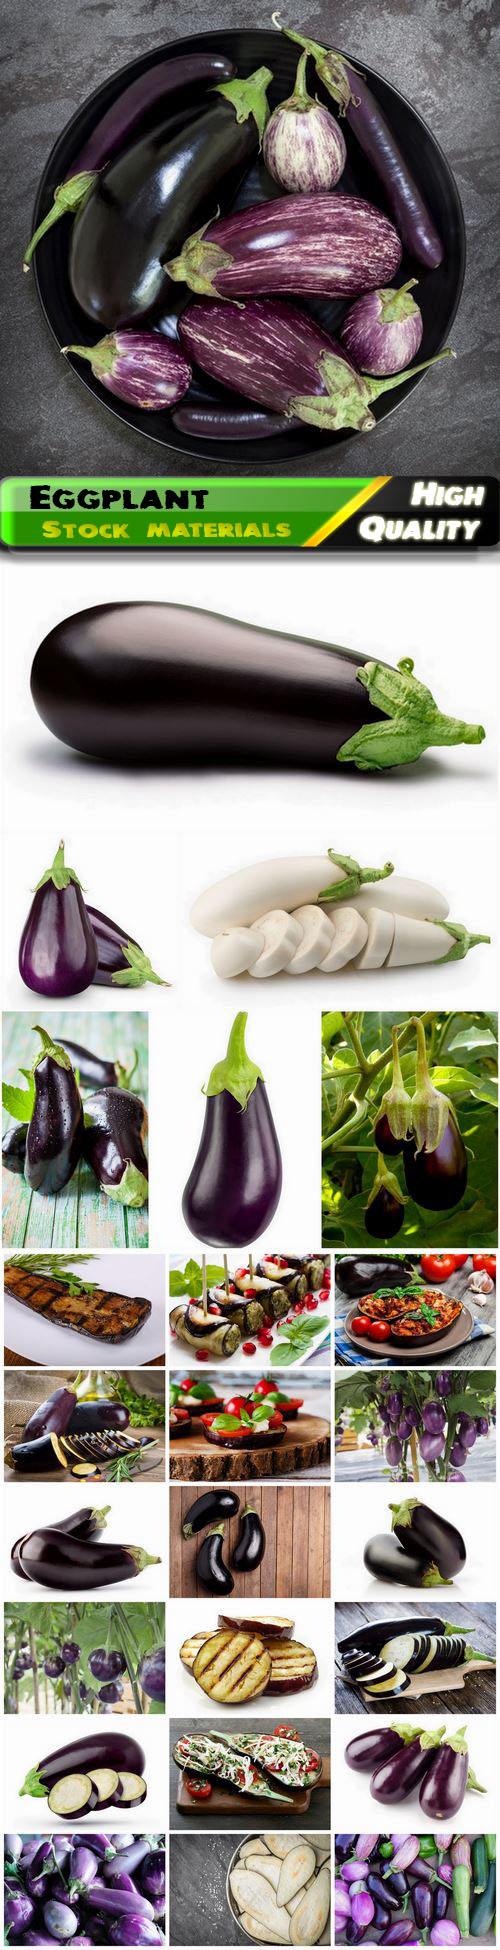 Eggplant vegetable or Pasleton is dark-fruited 25 HQ Jpg